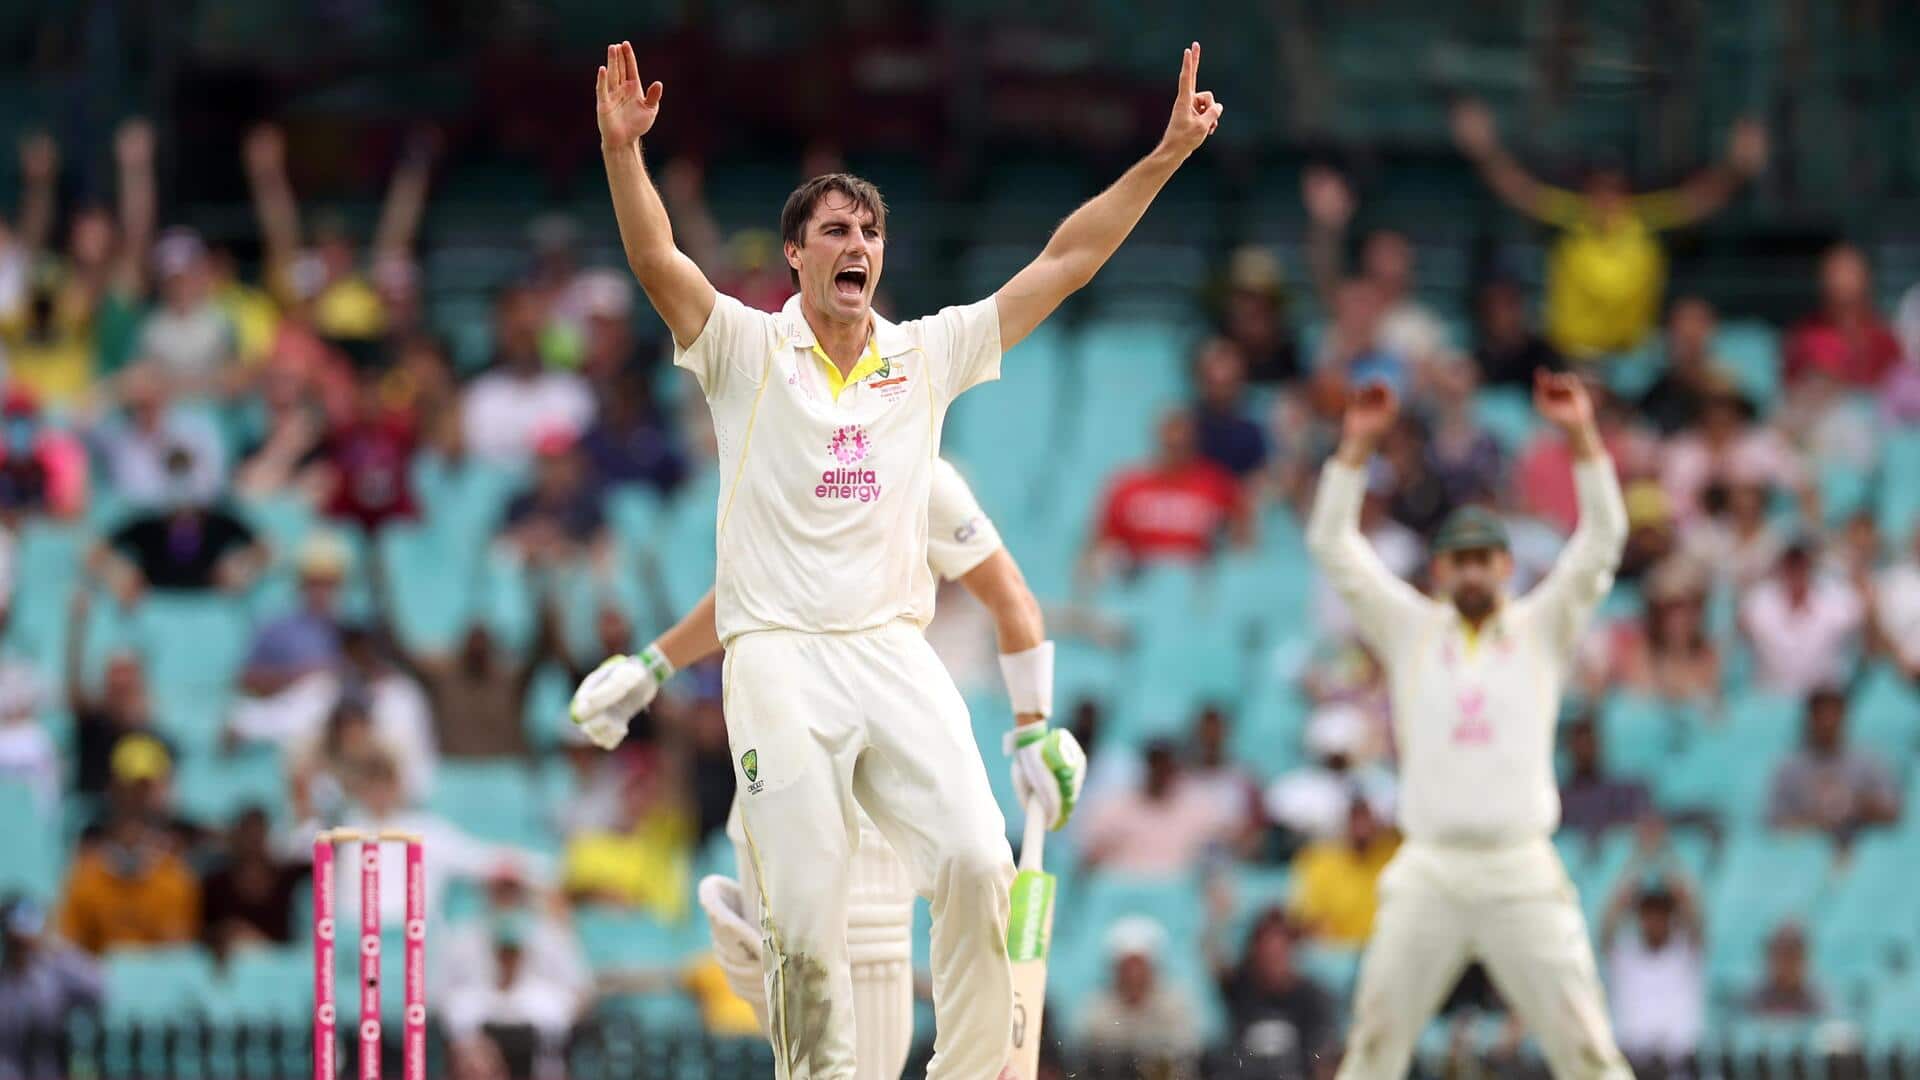 दूसरा टेस्ट: पैट कमिंस ने न्यूजीलैंड के खिलाफ दूसरी पारी में लिए 4 विकेट, जानिए आंकड़े